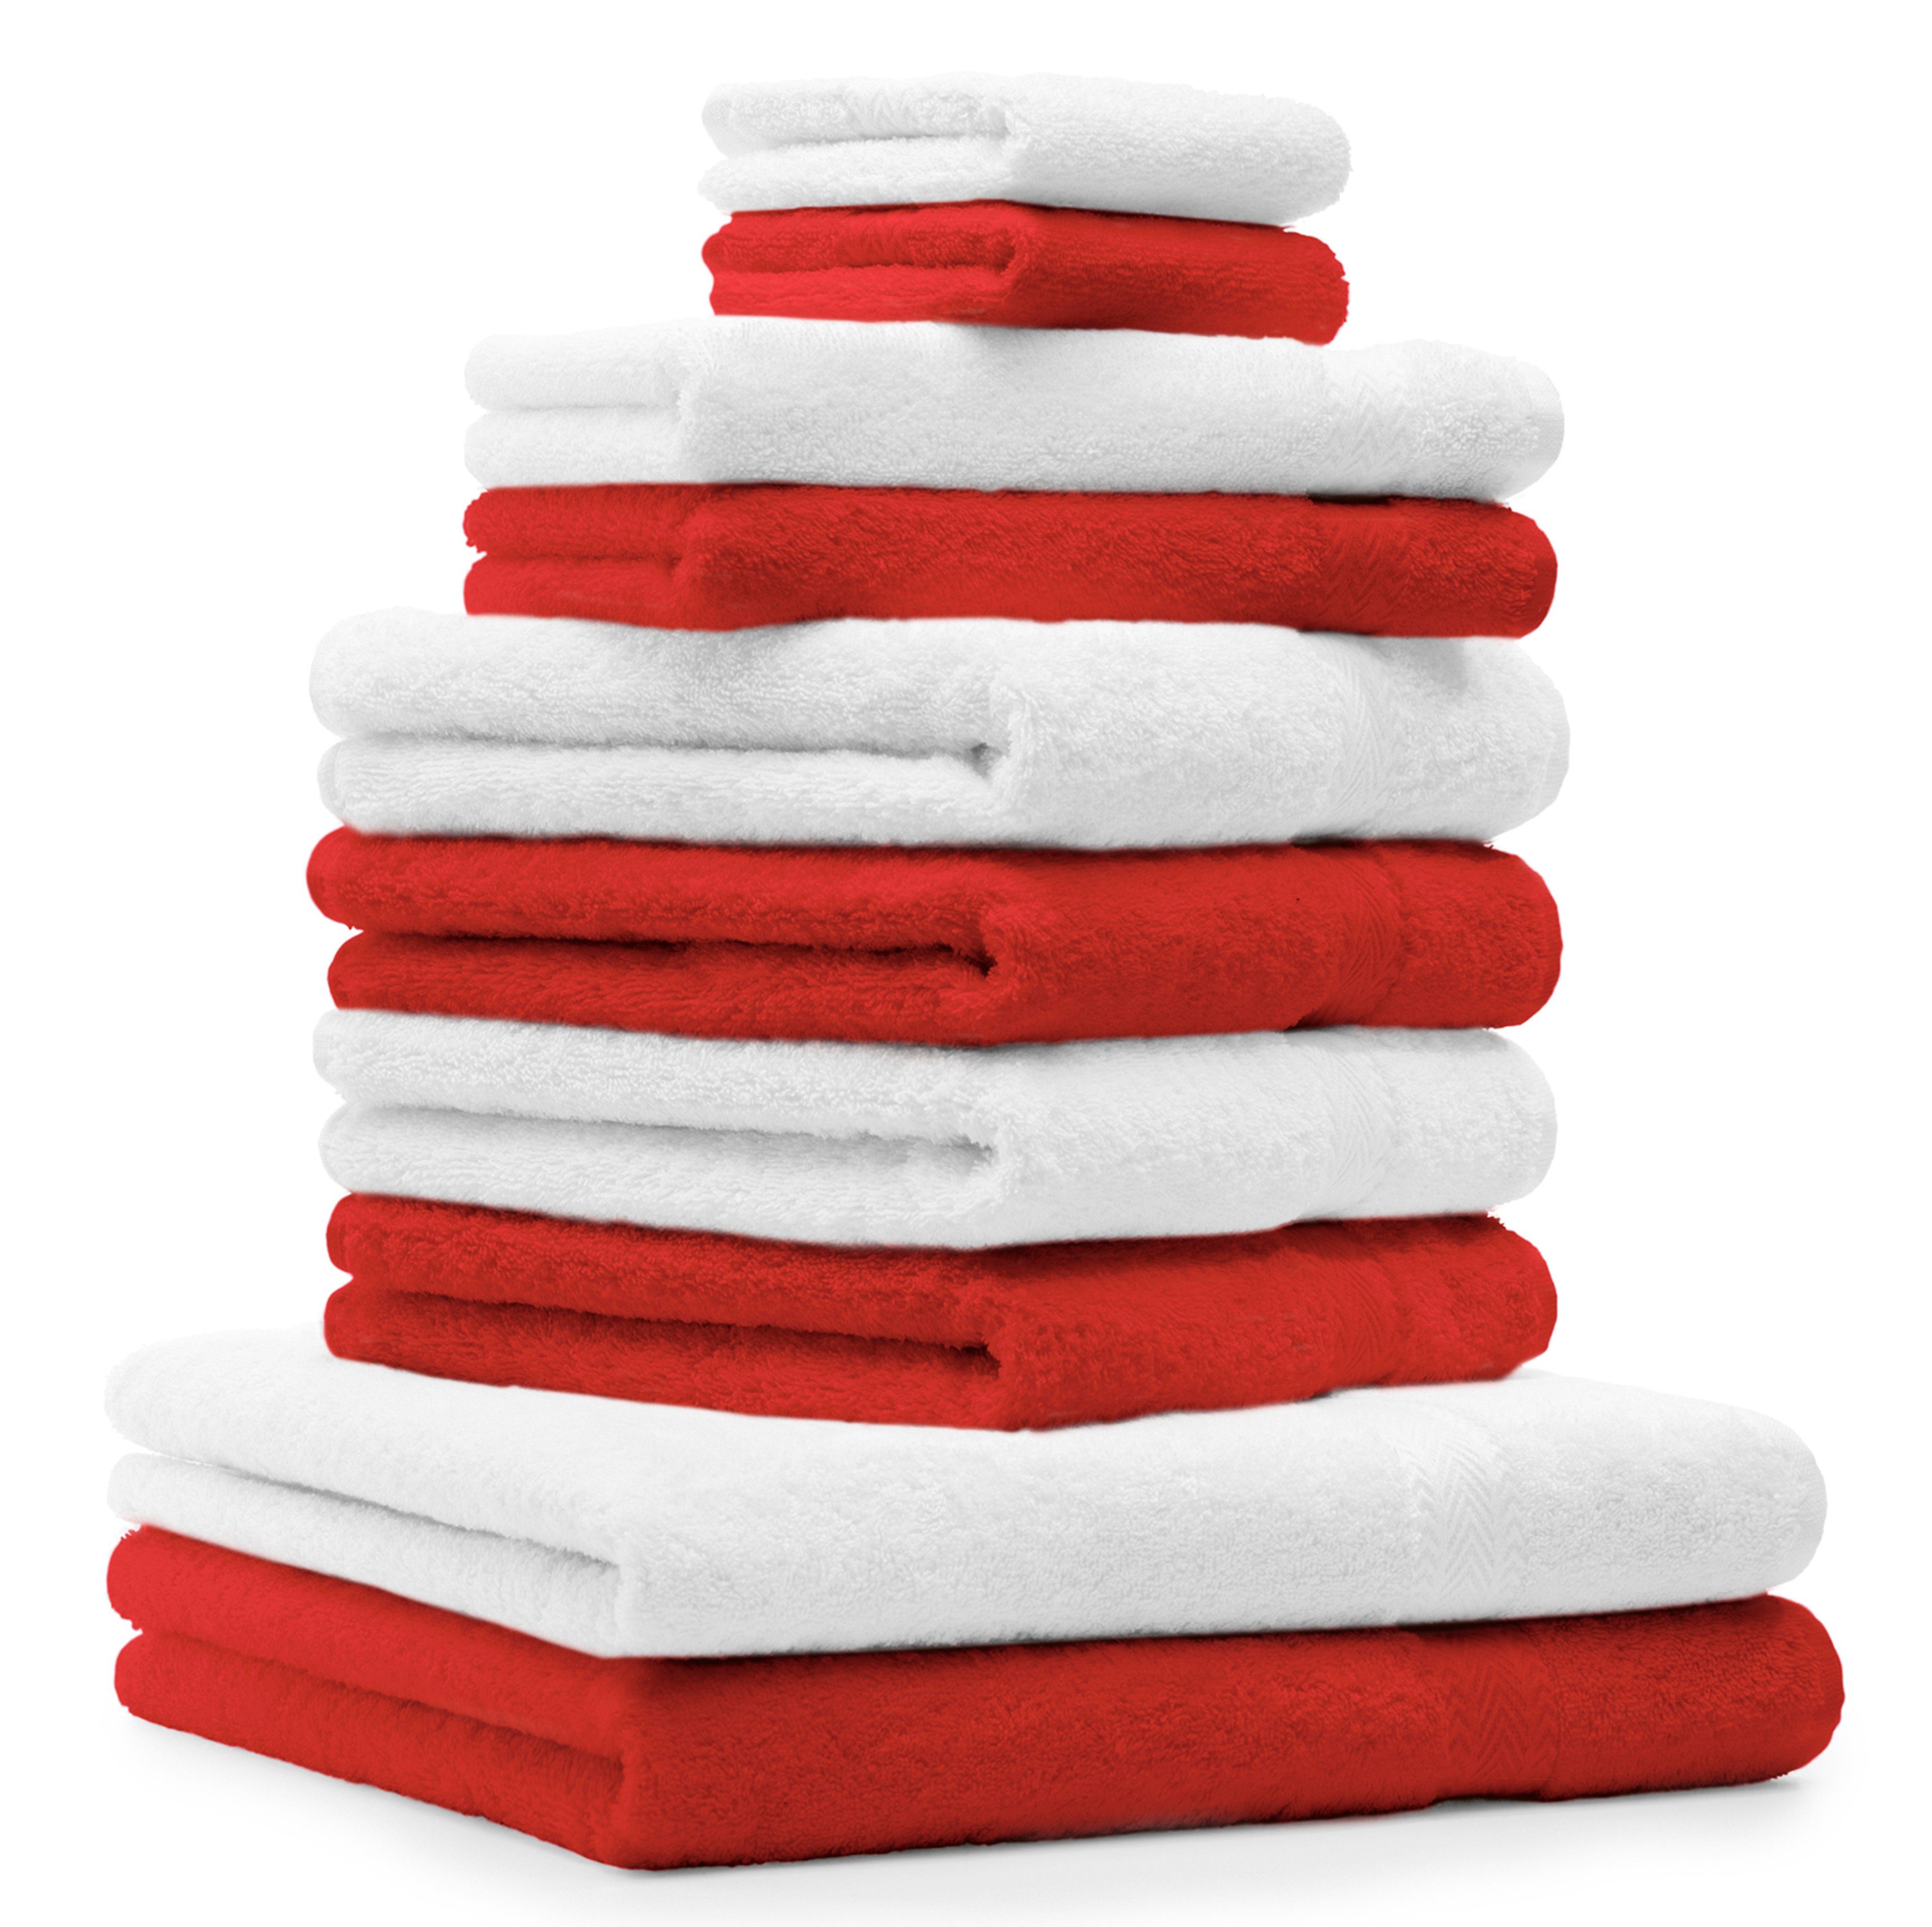 Betz Handtuch Set 10 TLG. Handtuch Set Classic Farbe rot und weiß, 100% Baumwolle